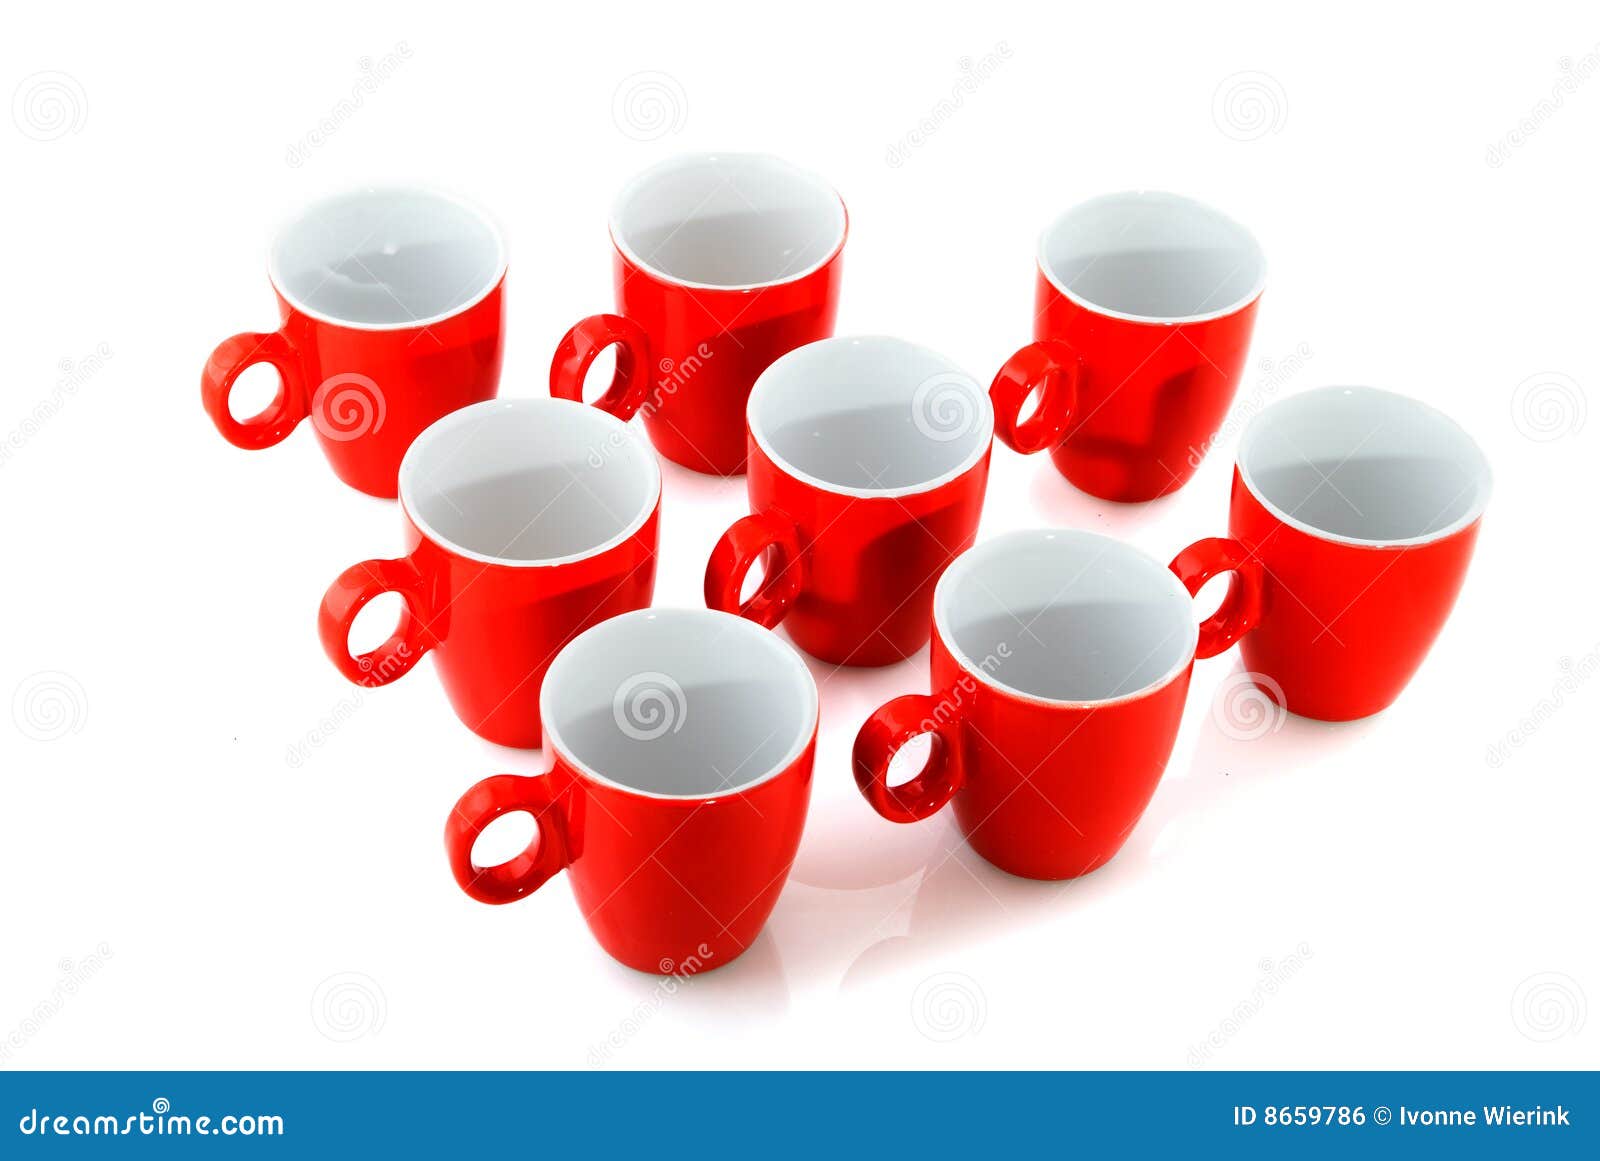 Bezit groot Kan niet Rode koffiemokken stock foto. Image of thee, aardewerk - 8659786